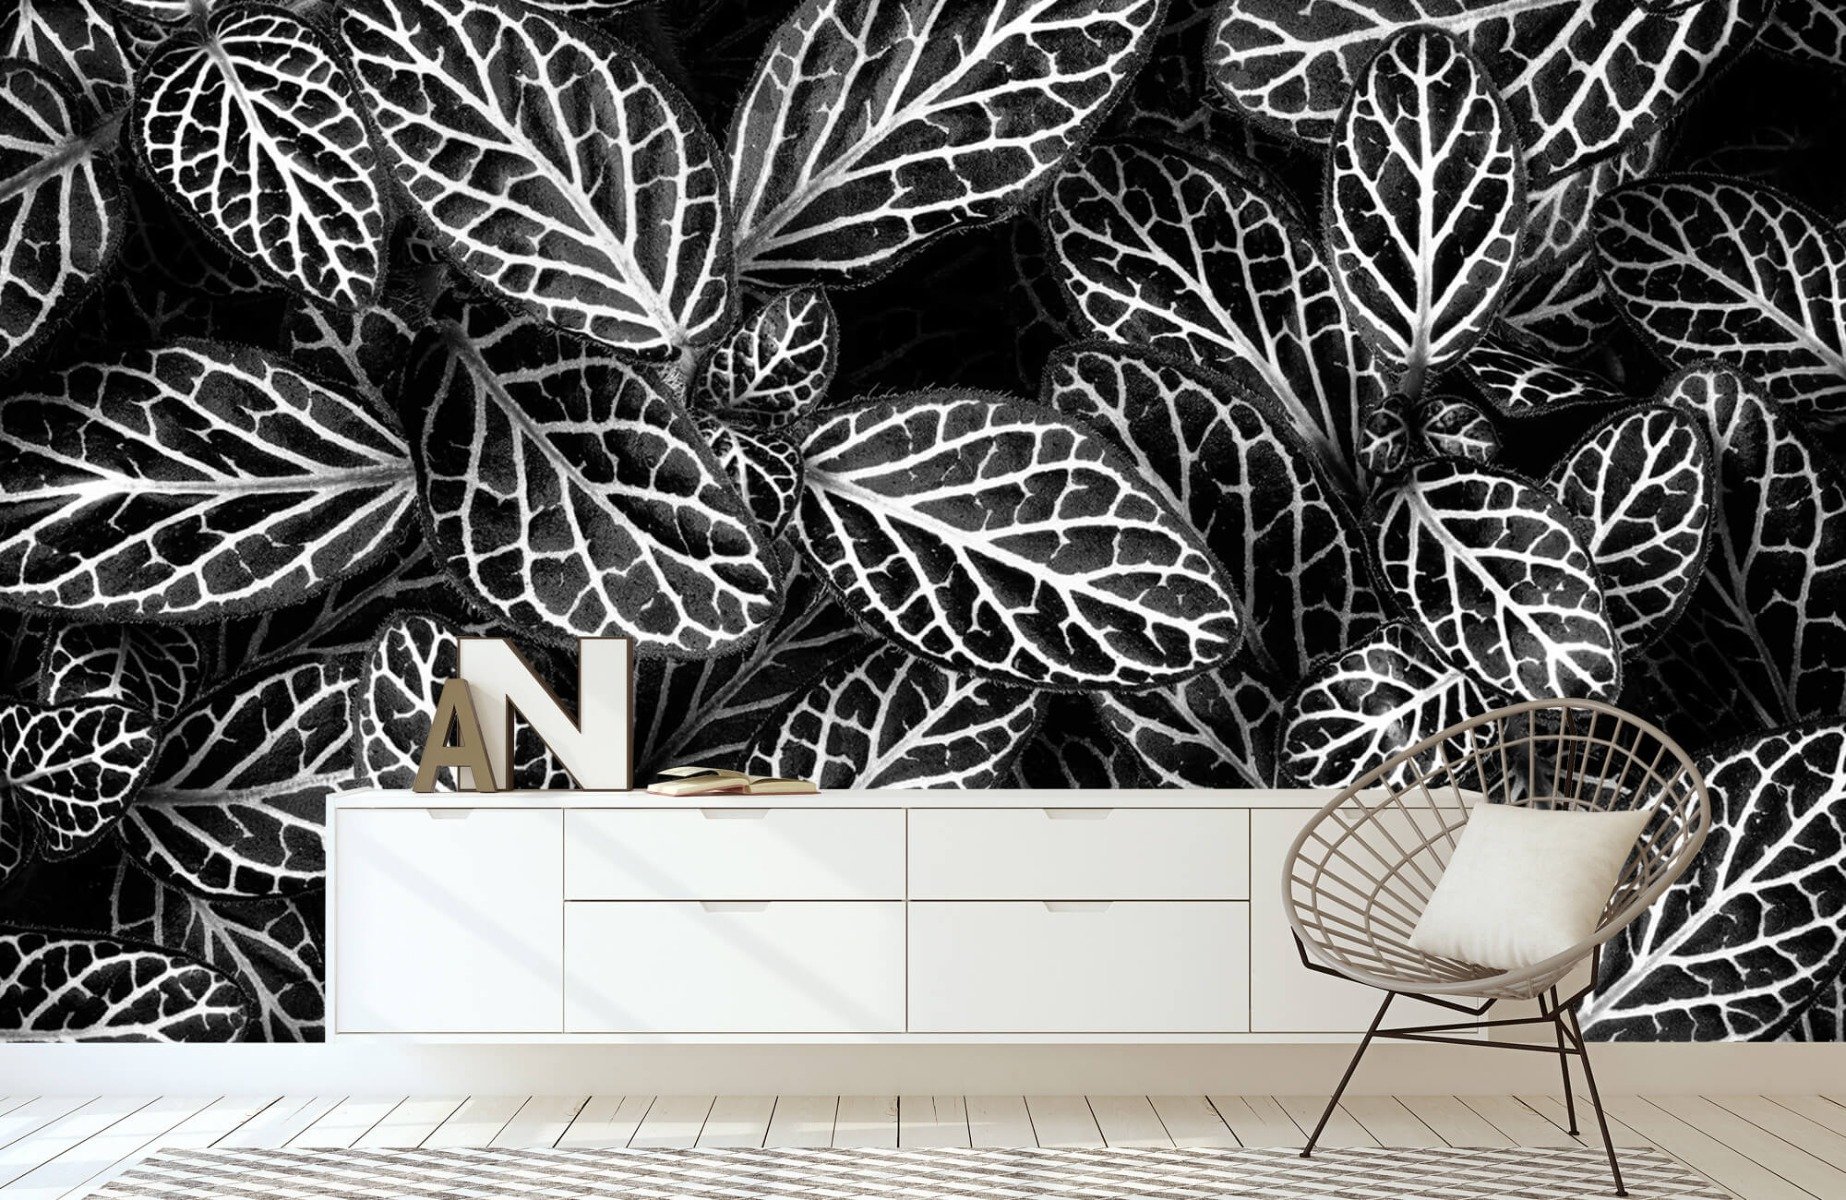 Blanco y negro - Papel pintado con Fittonia - Sala de reuniones 23